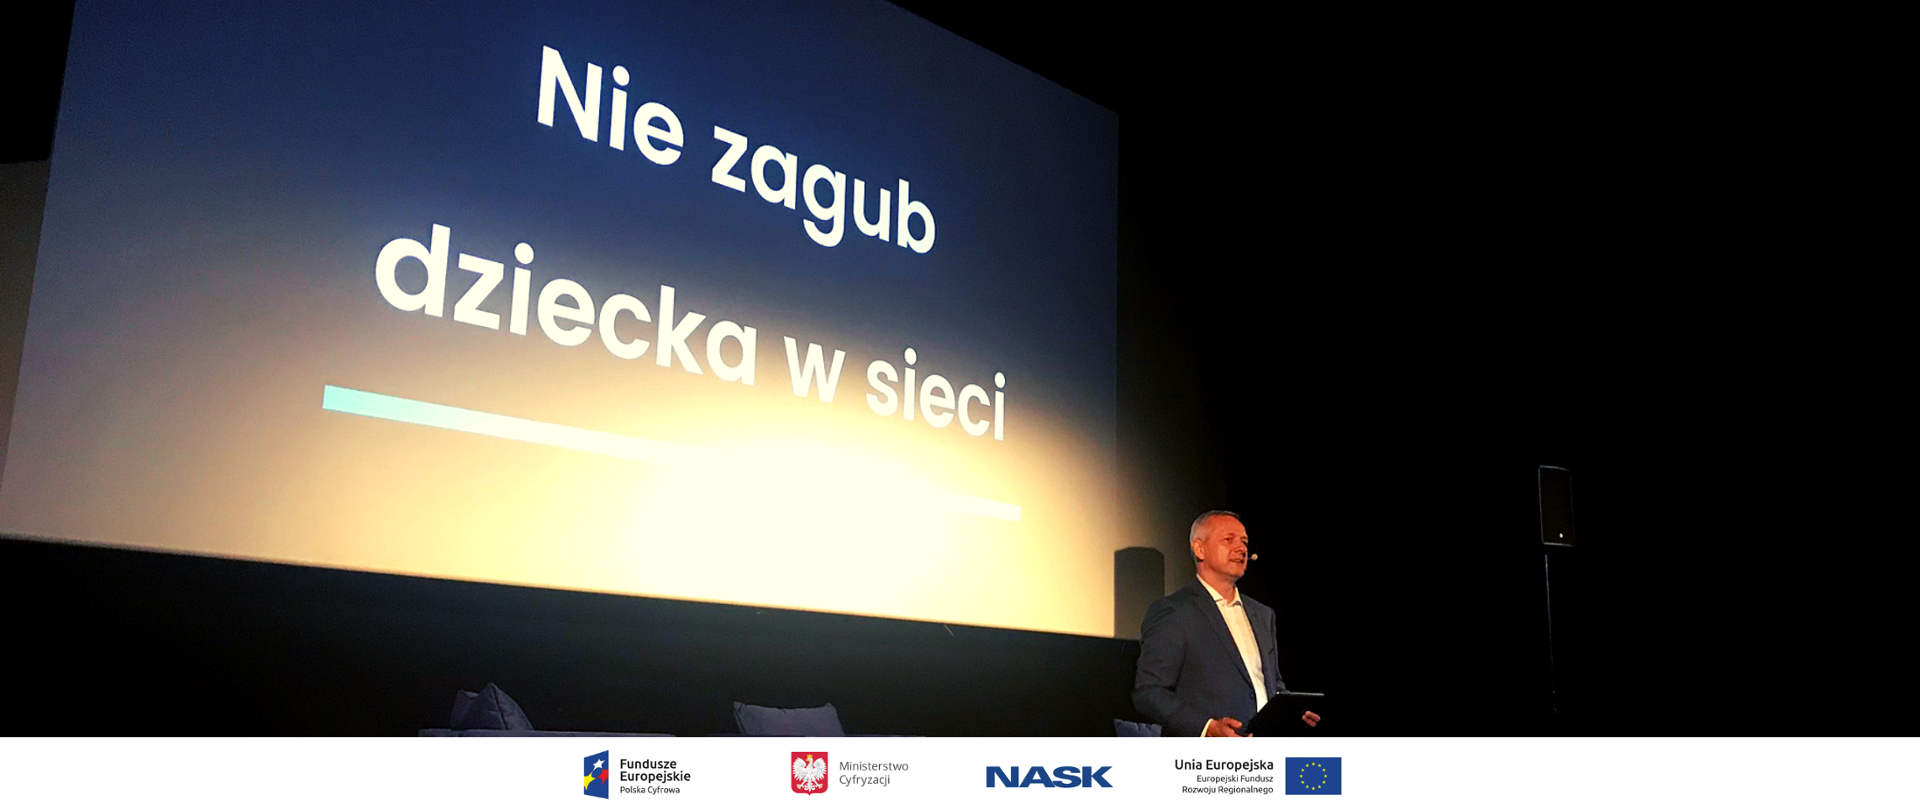 Minister Marek Zagórski podczas konferencji, w tle ekran z napisem "nie zagub dziecka w sieci"